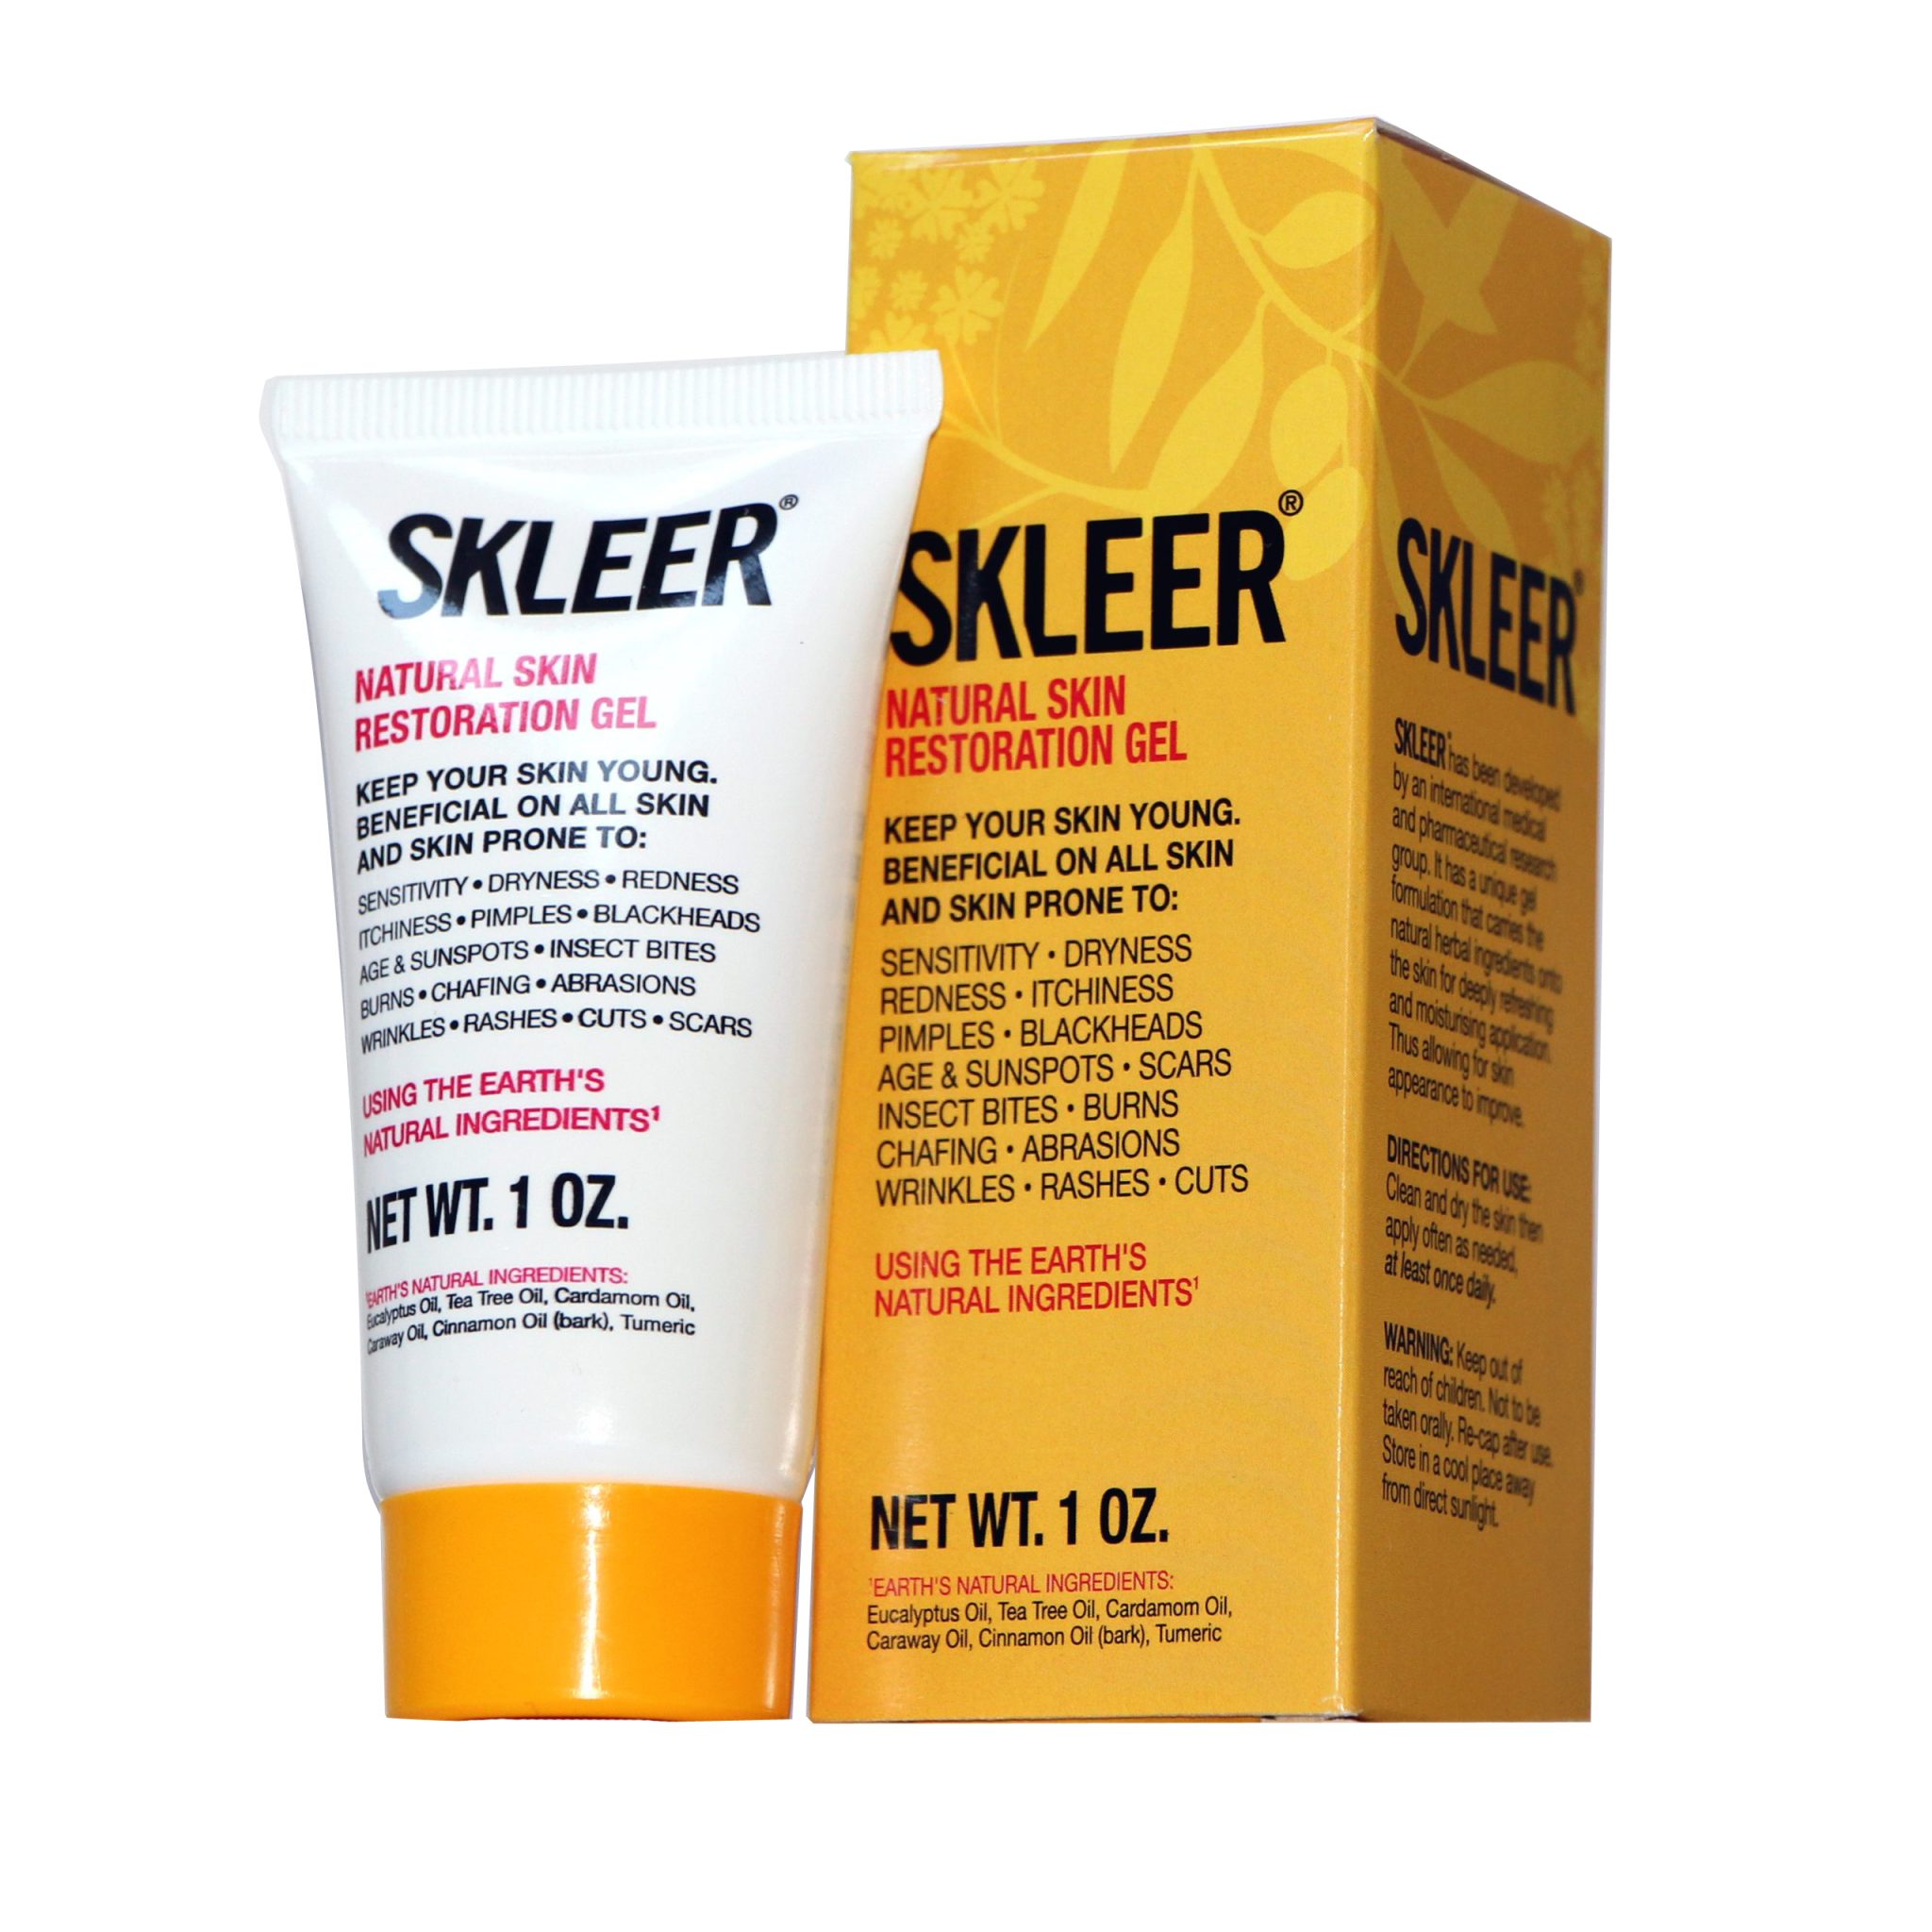 SKLEER – Natural Skin Restoration Gel – 30ml/1oz - SKLEER